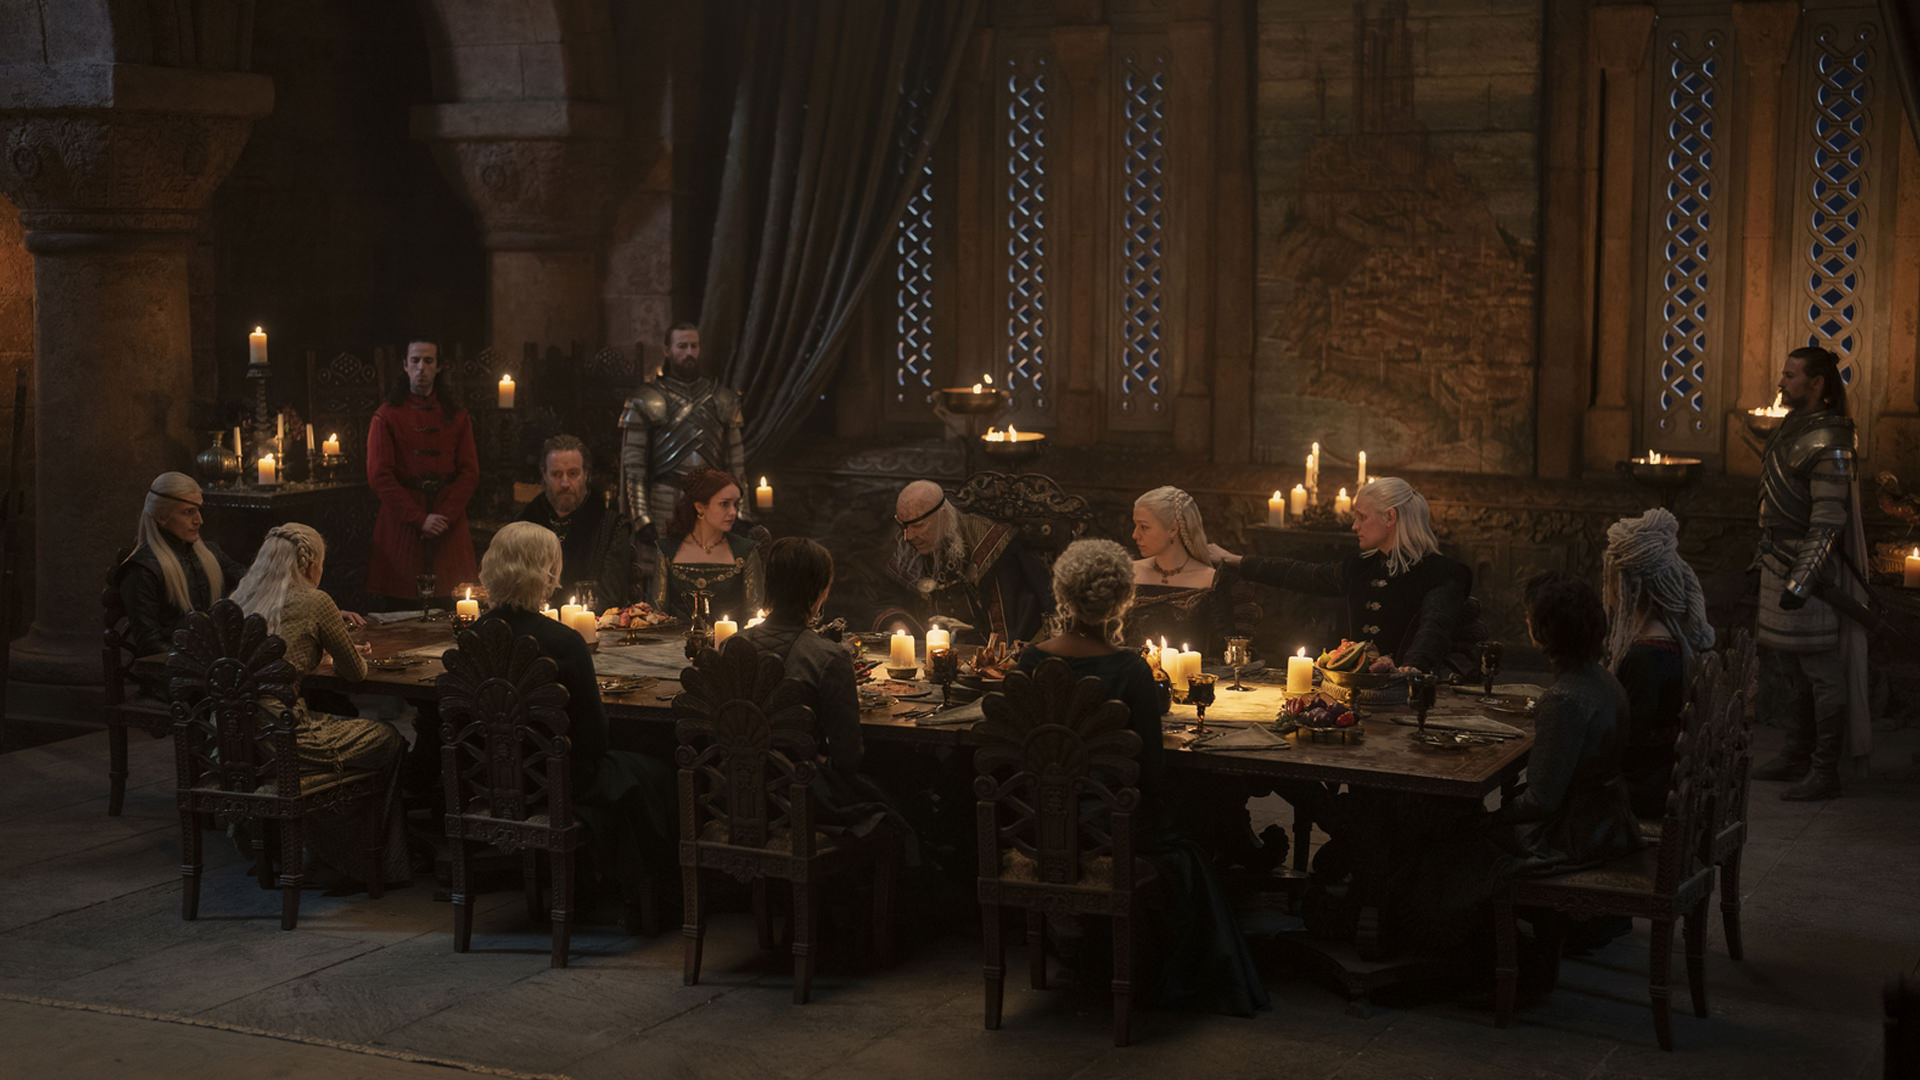 خانواده پادشاه ویسریس در ضیافت شام سریال خاندان اژدها